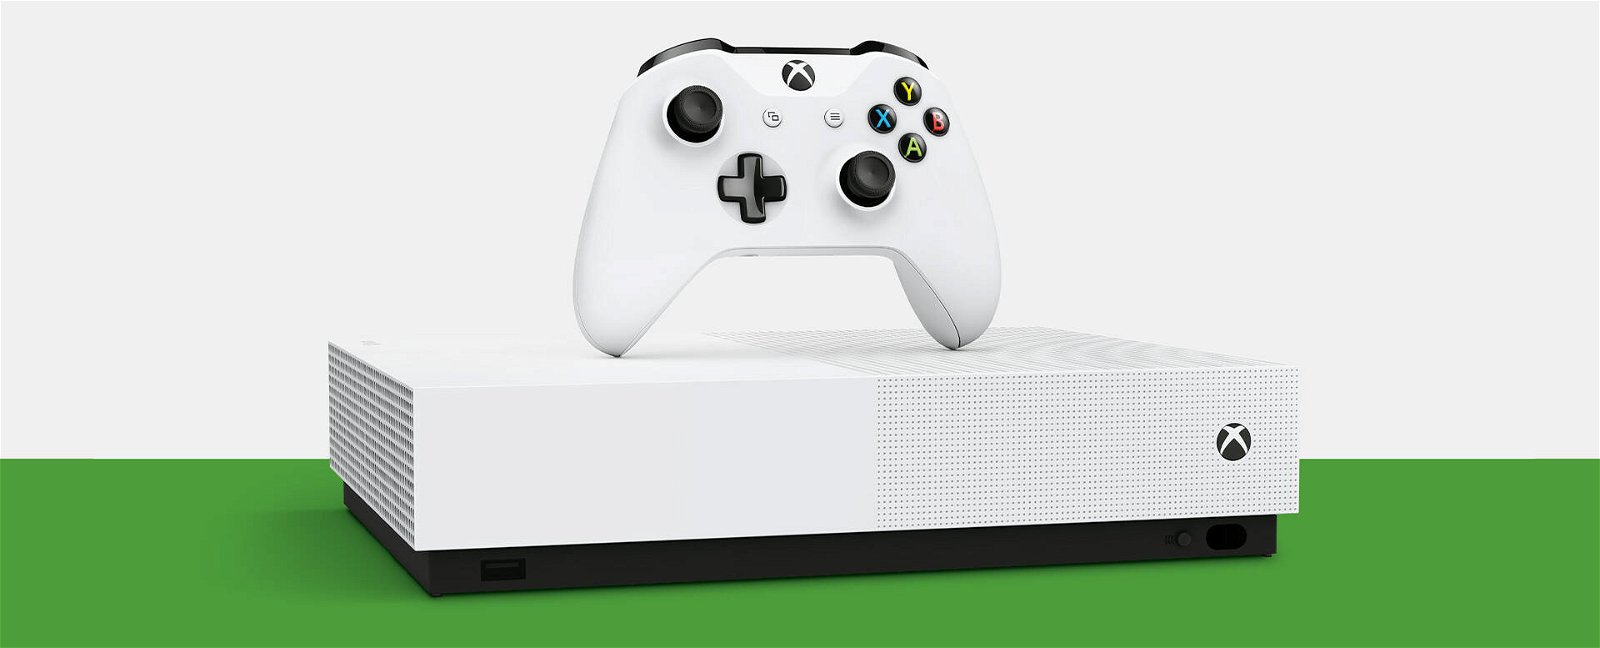 Xbox One, è finita: Microsoft ha interrotto la produzione di console